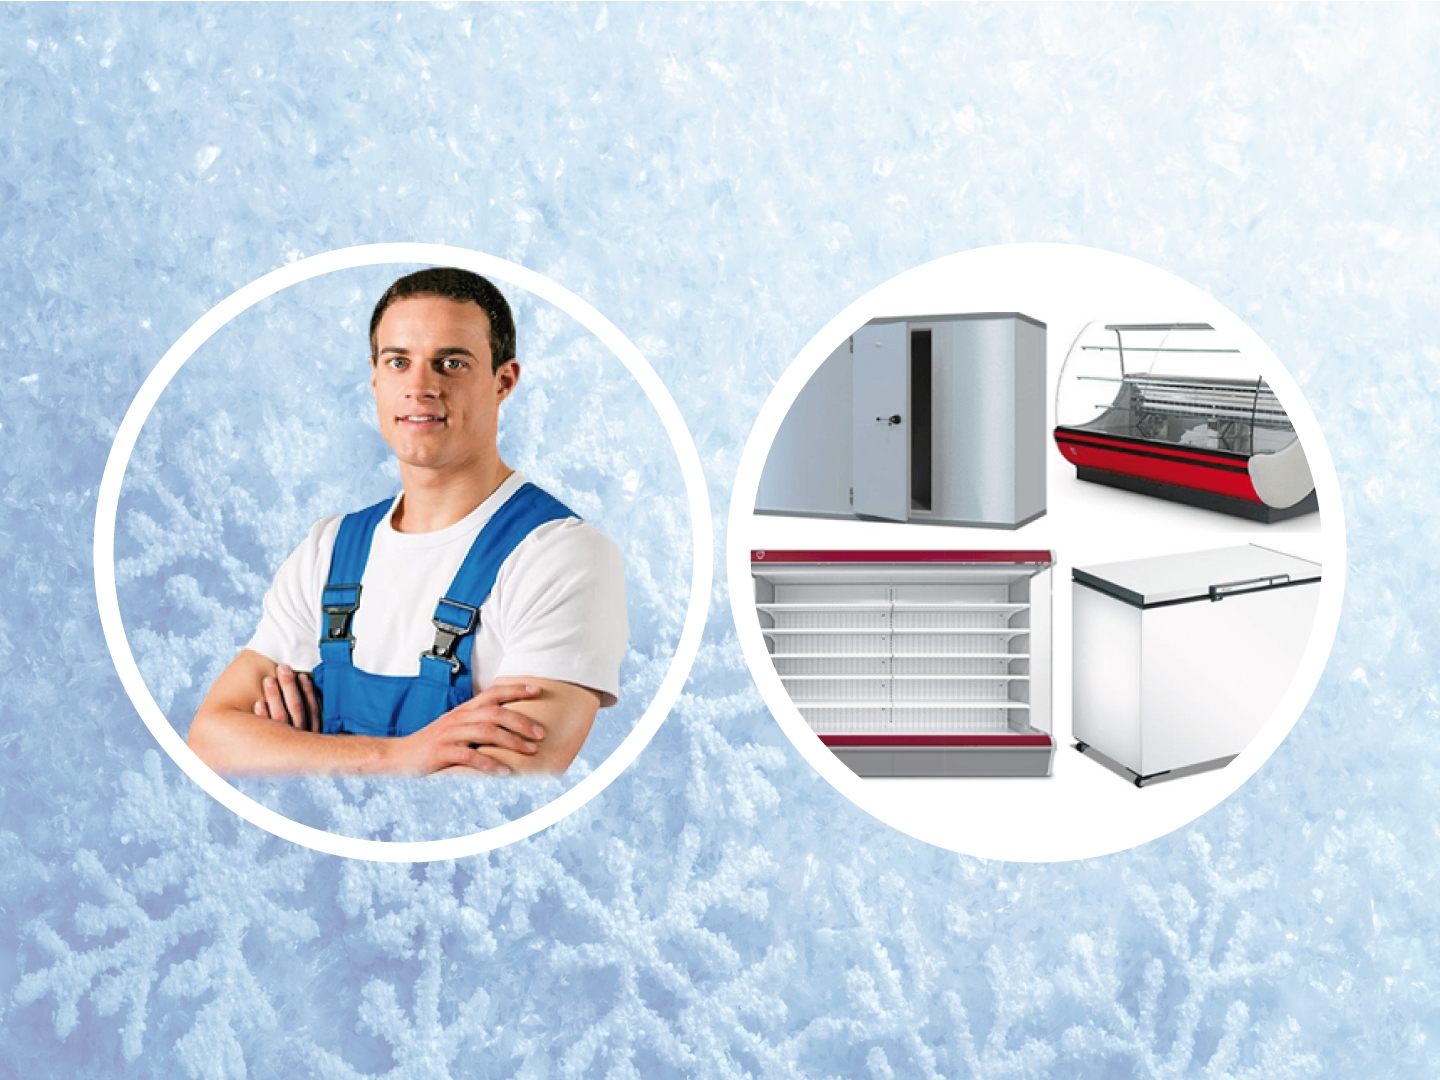 монтаж установка сервисное обслуживание ремонт холодильного оборудования, торговые холодильные установки, холодильная витрина камера